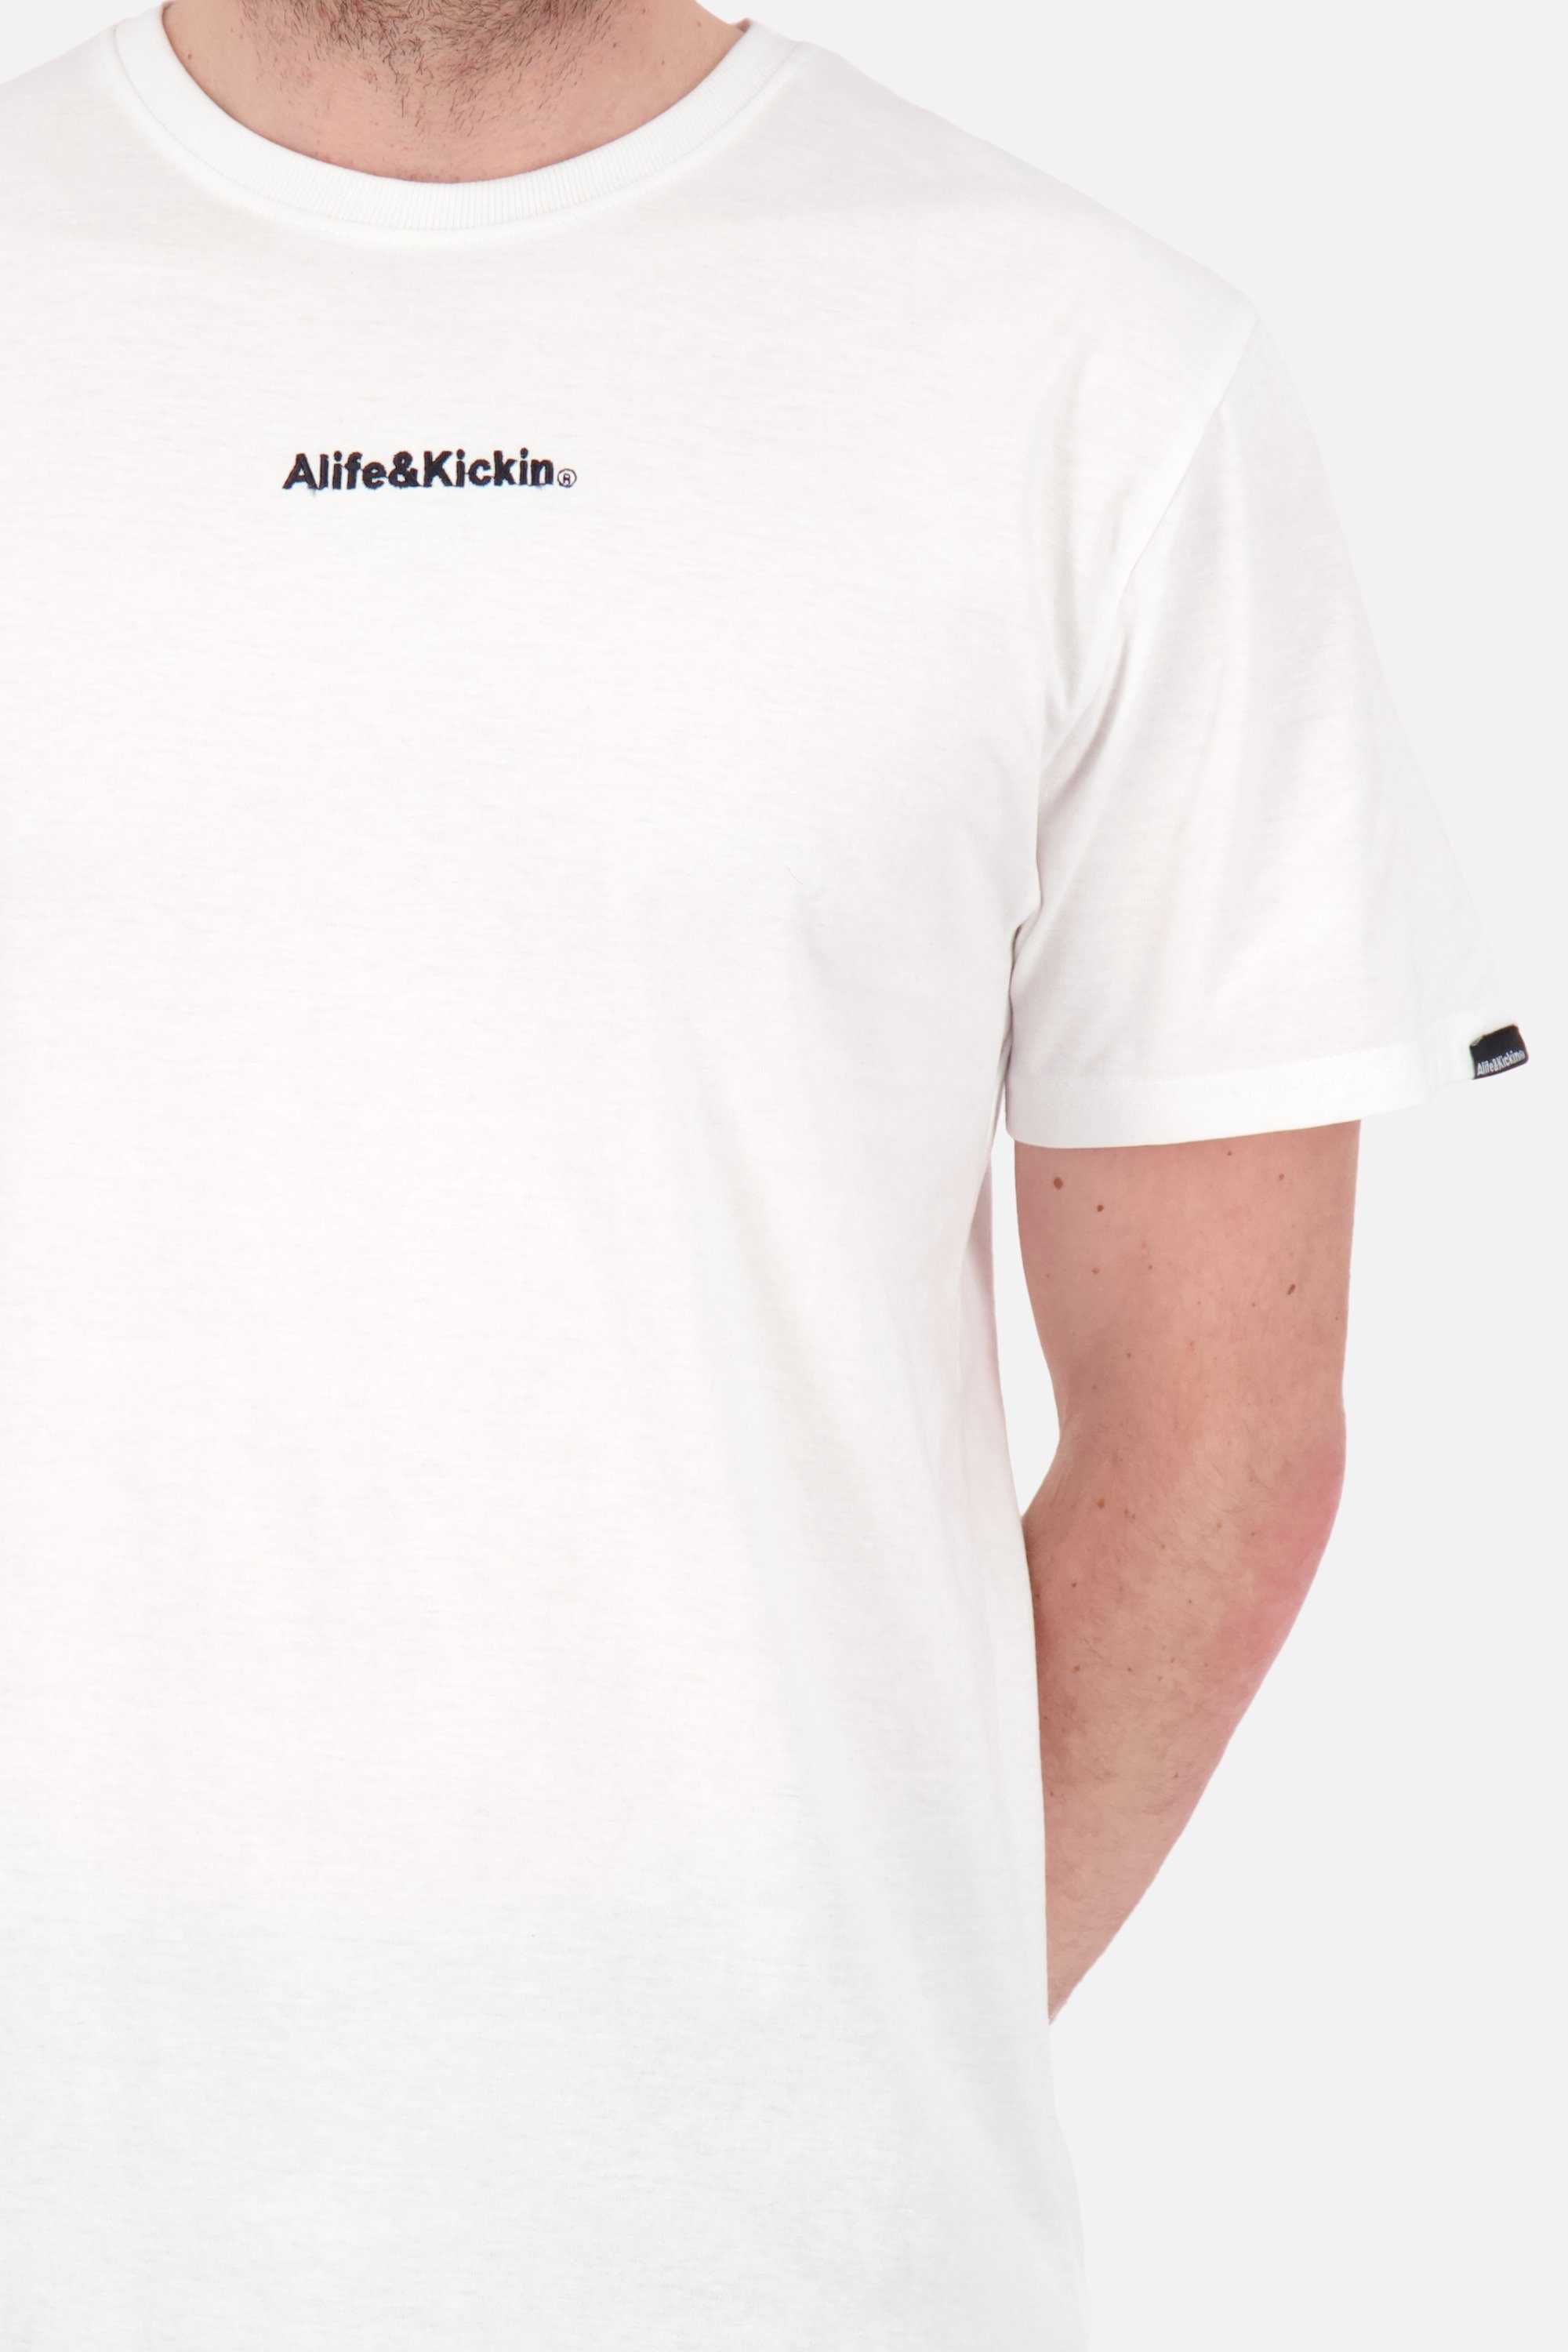 Kickin & E Alife Herren Shirt Rundhalsshirt white Shirt Kurzarmshirt, AlfieAK